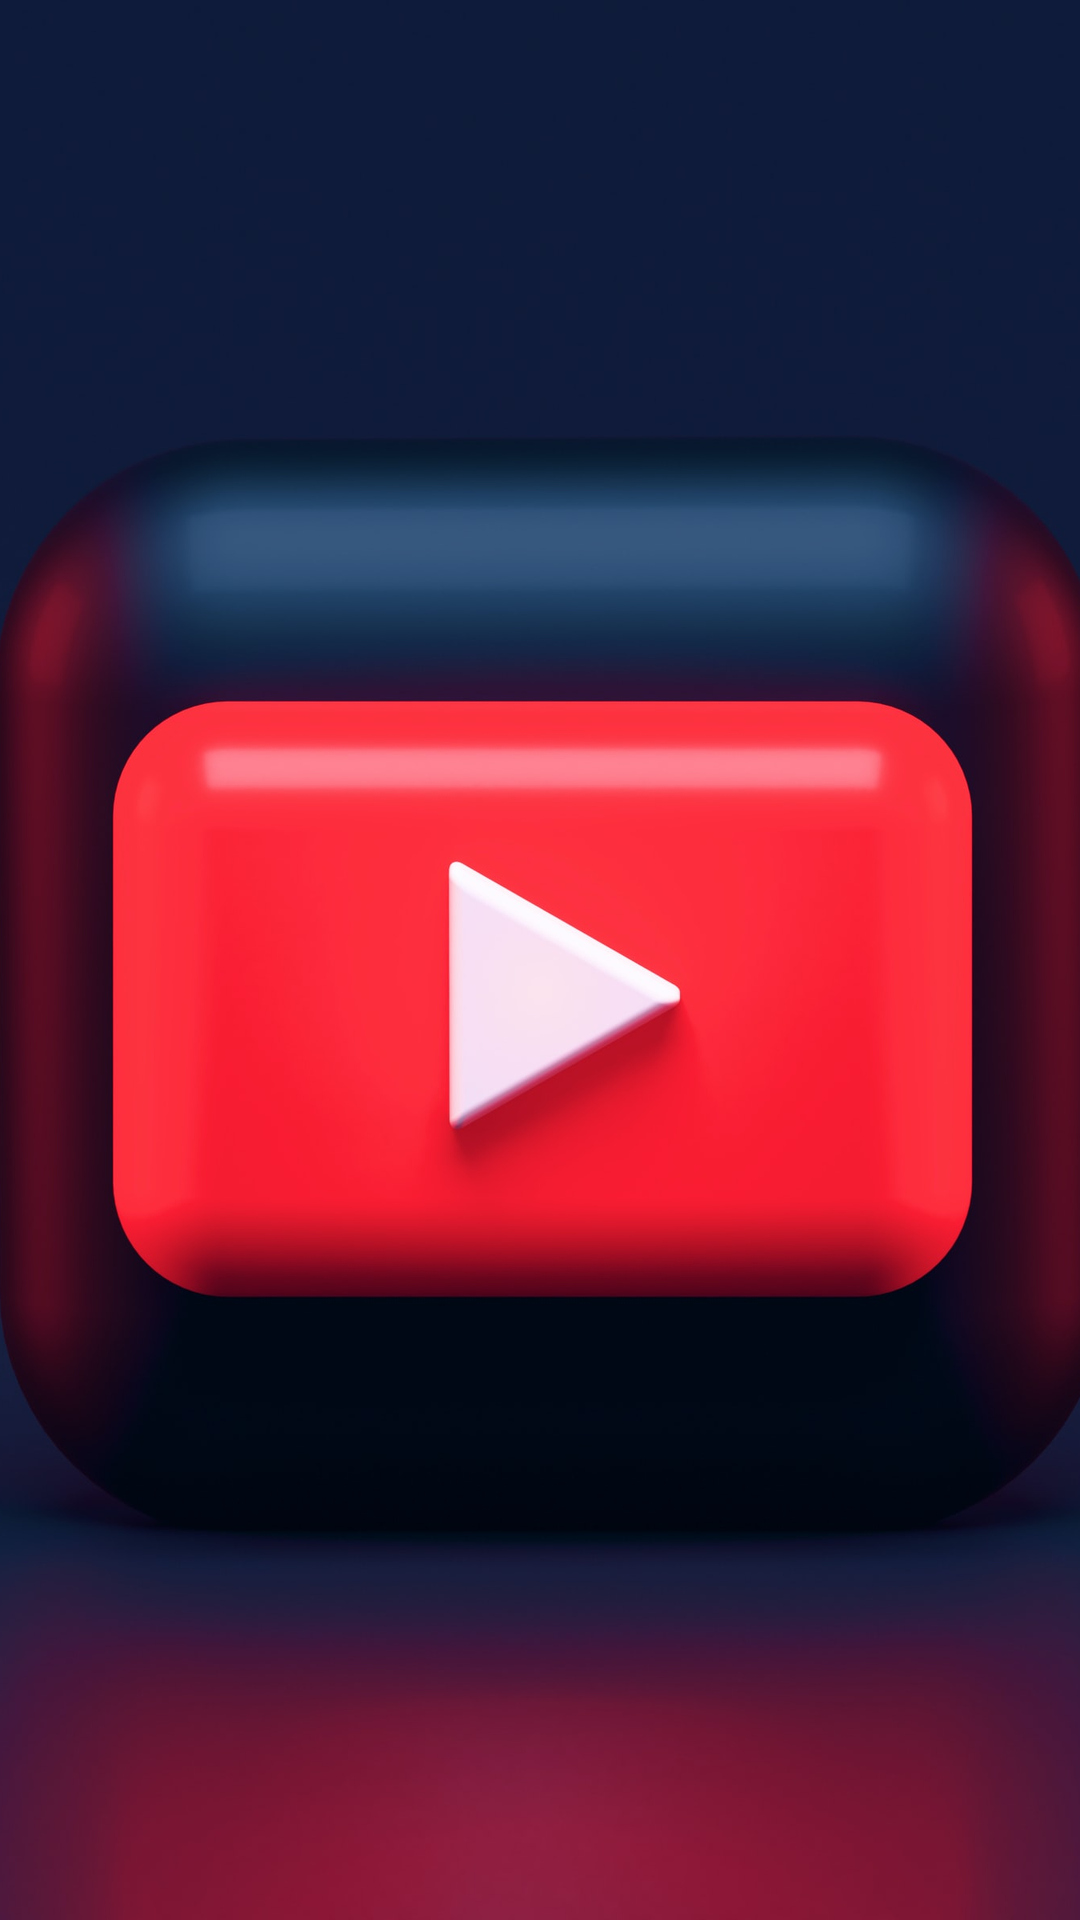 Tải xuống biểu tượng YouTube 3D: Biểu tượng YouTube 3D sẽ giúp bạn tạo ra những video ấn tượng và chuyên nghiệp. Những biểu tượng này sẽ mang đến cho bạn nhiều lợi ích khi lựa chọn định dạng cho video của mình.